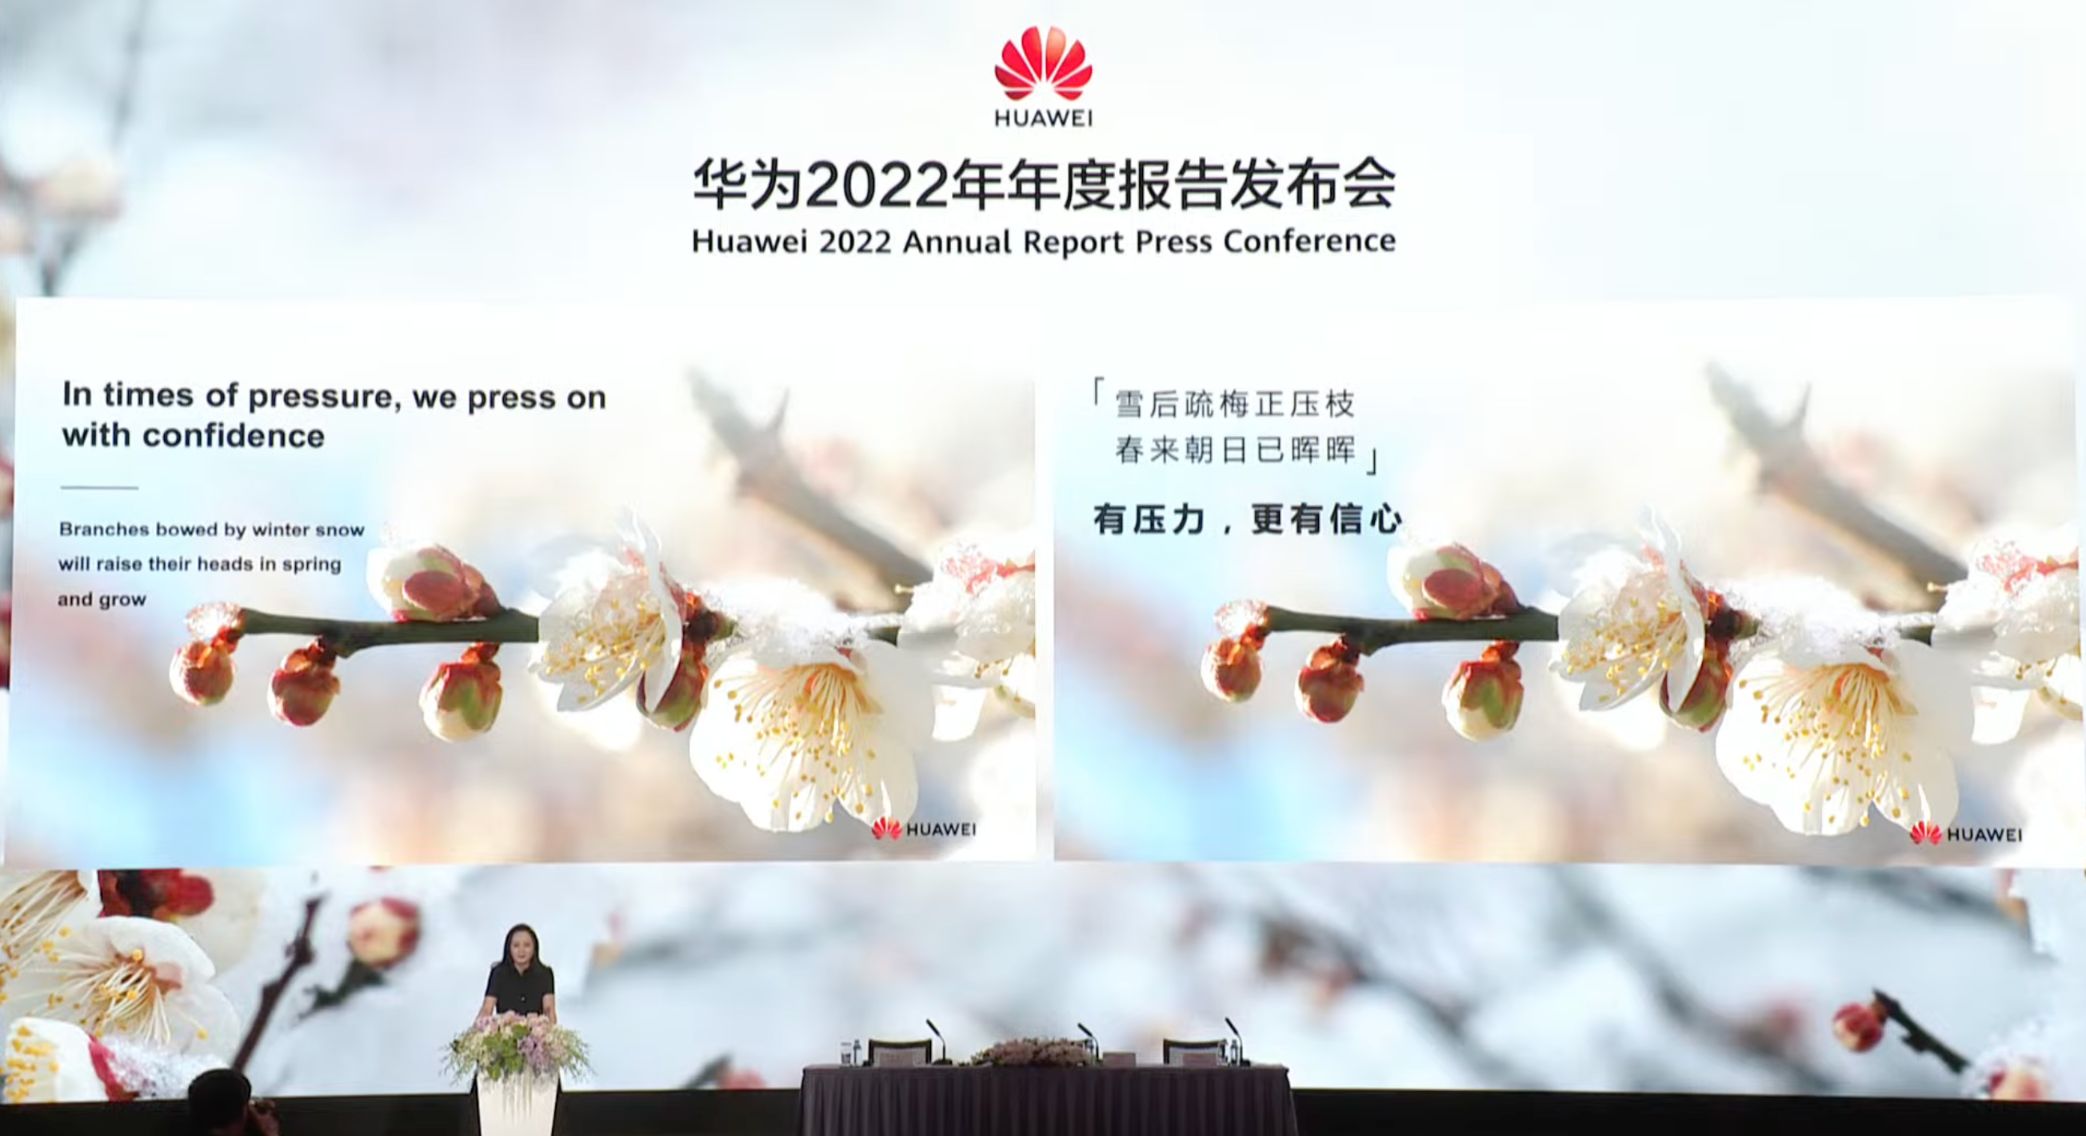 Bà Mạnh Vãn Chu chia sẻ tại sự kiện Báo cáo Tài chính năm 2022 Huawei công bố Báo cáo Thường niên 2022: Ổn định, vững chắc và vững bền